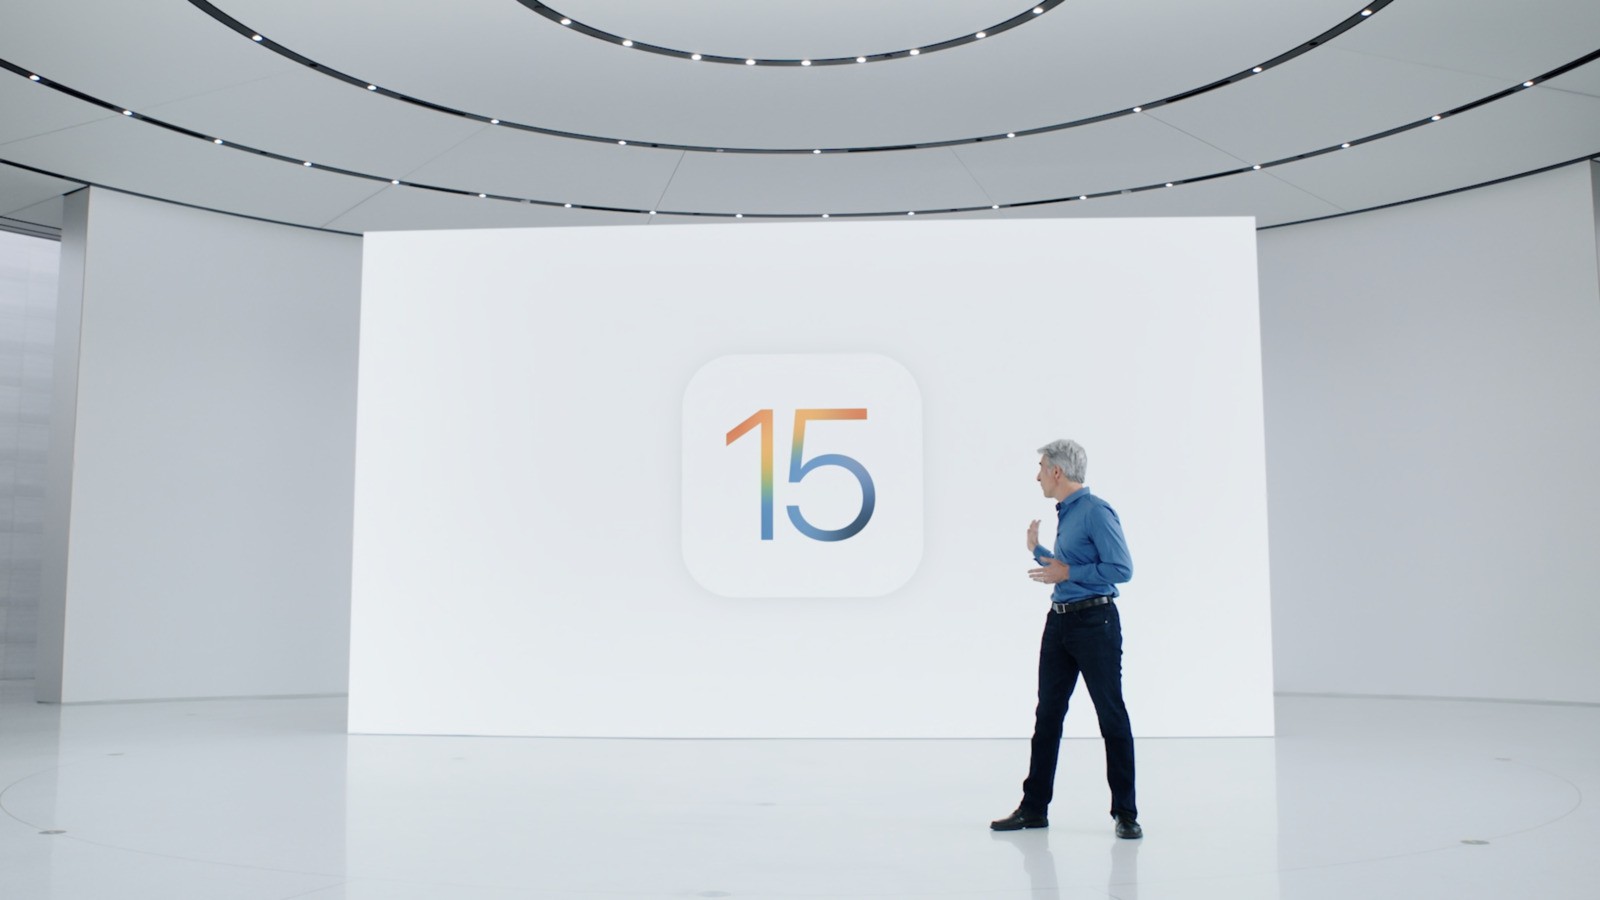 اپل iOS 15 را با تغییراتی بنیادین در Facetime و Maps معرفی کرد